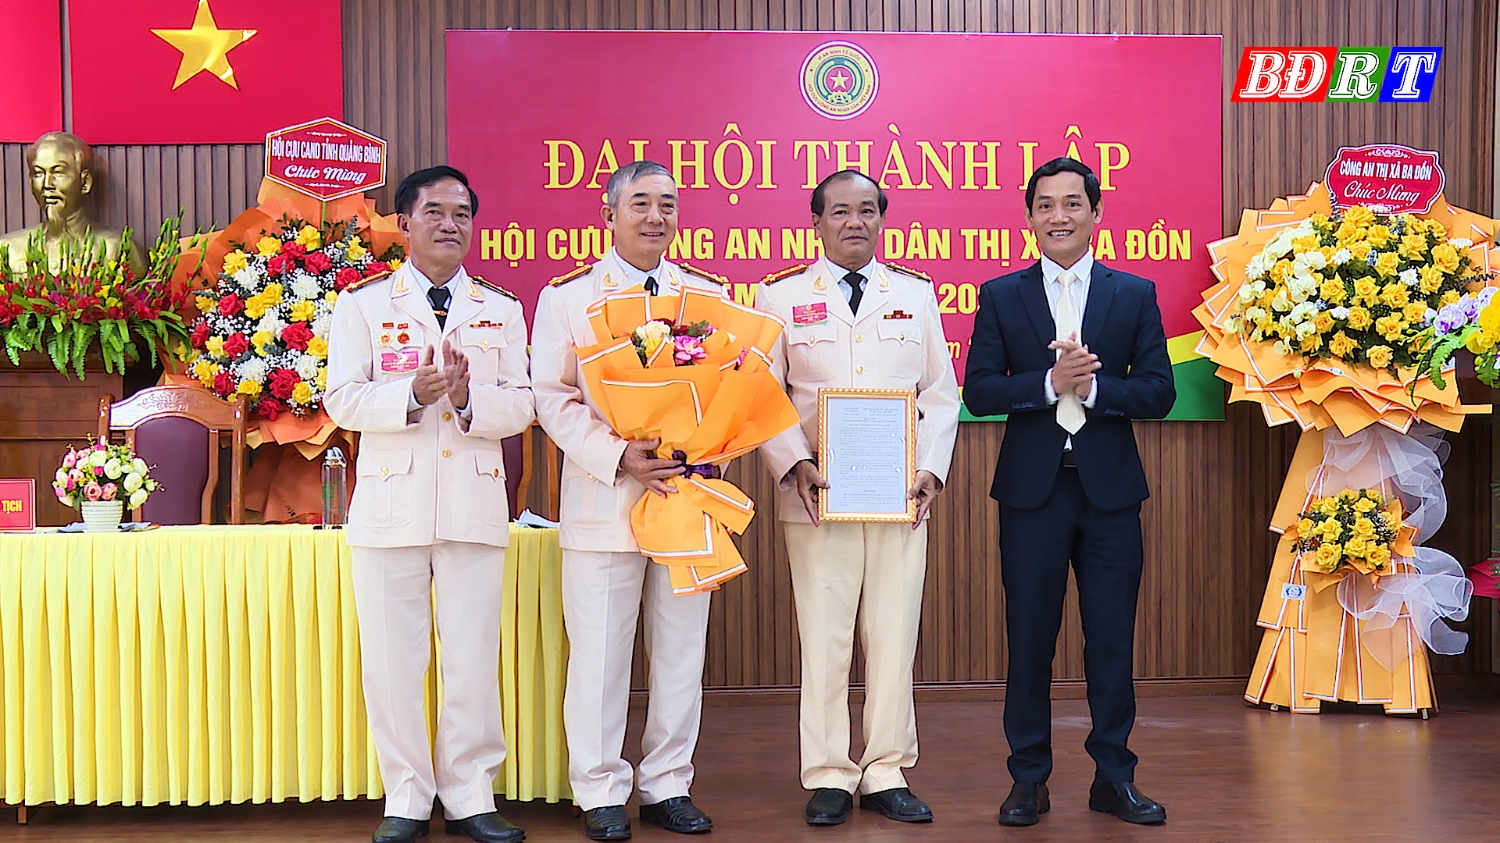 Đồng chí Nguyễn Văn Tình ThUV Phó Chủ tịch UBND thị xã Ba Đồn trao quyết định thành lập Hội cựu CAND thị xã Ba Đồn